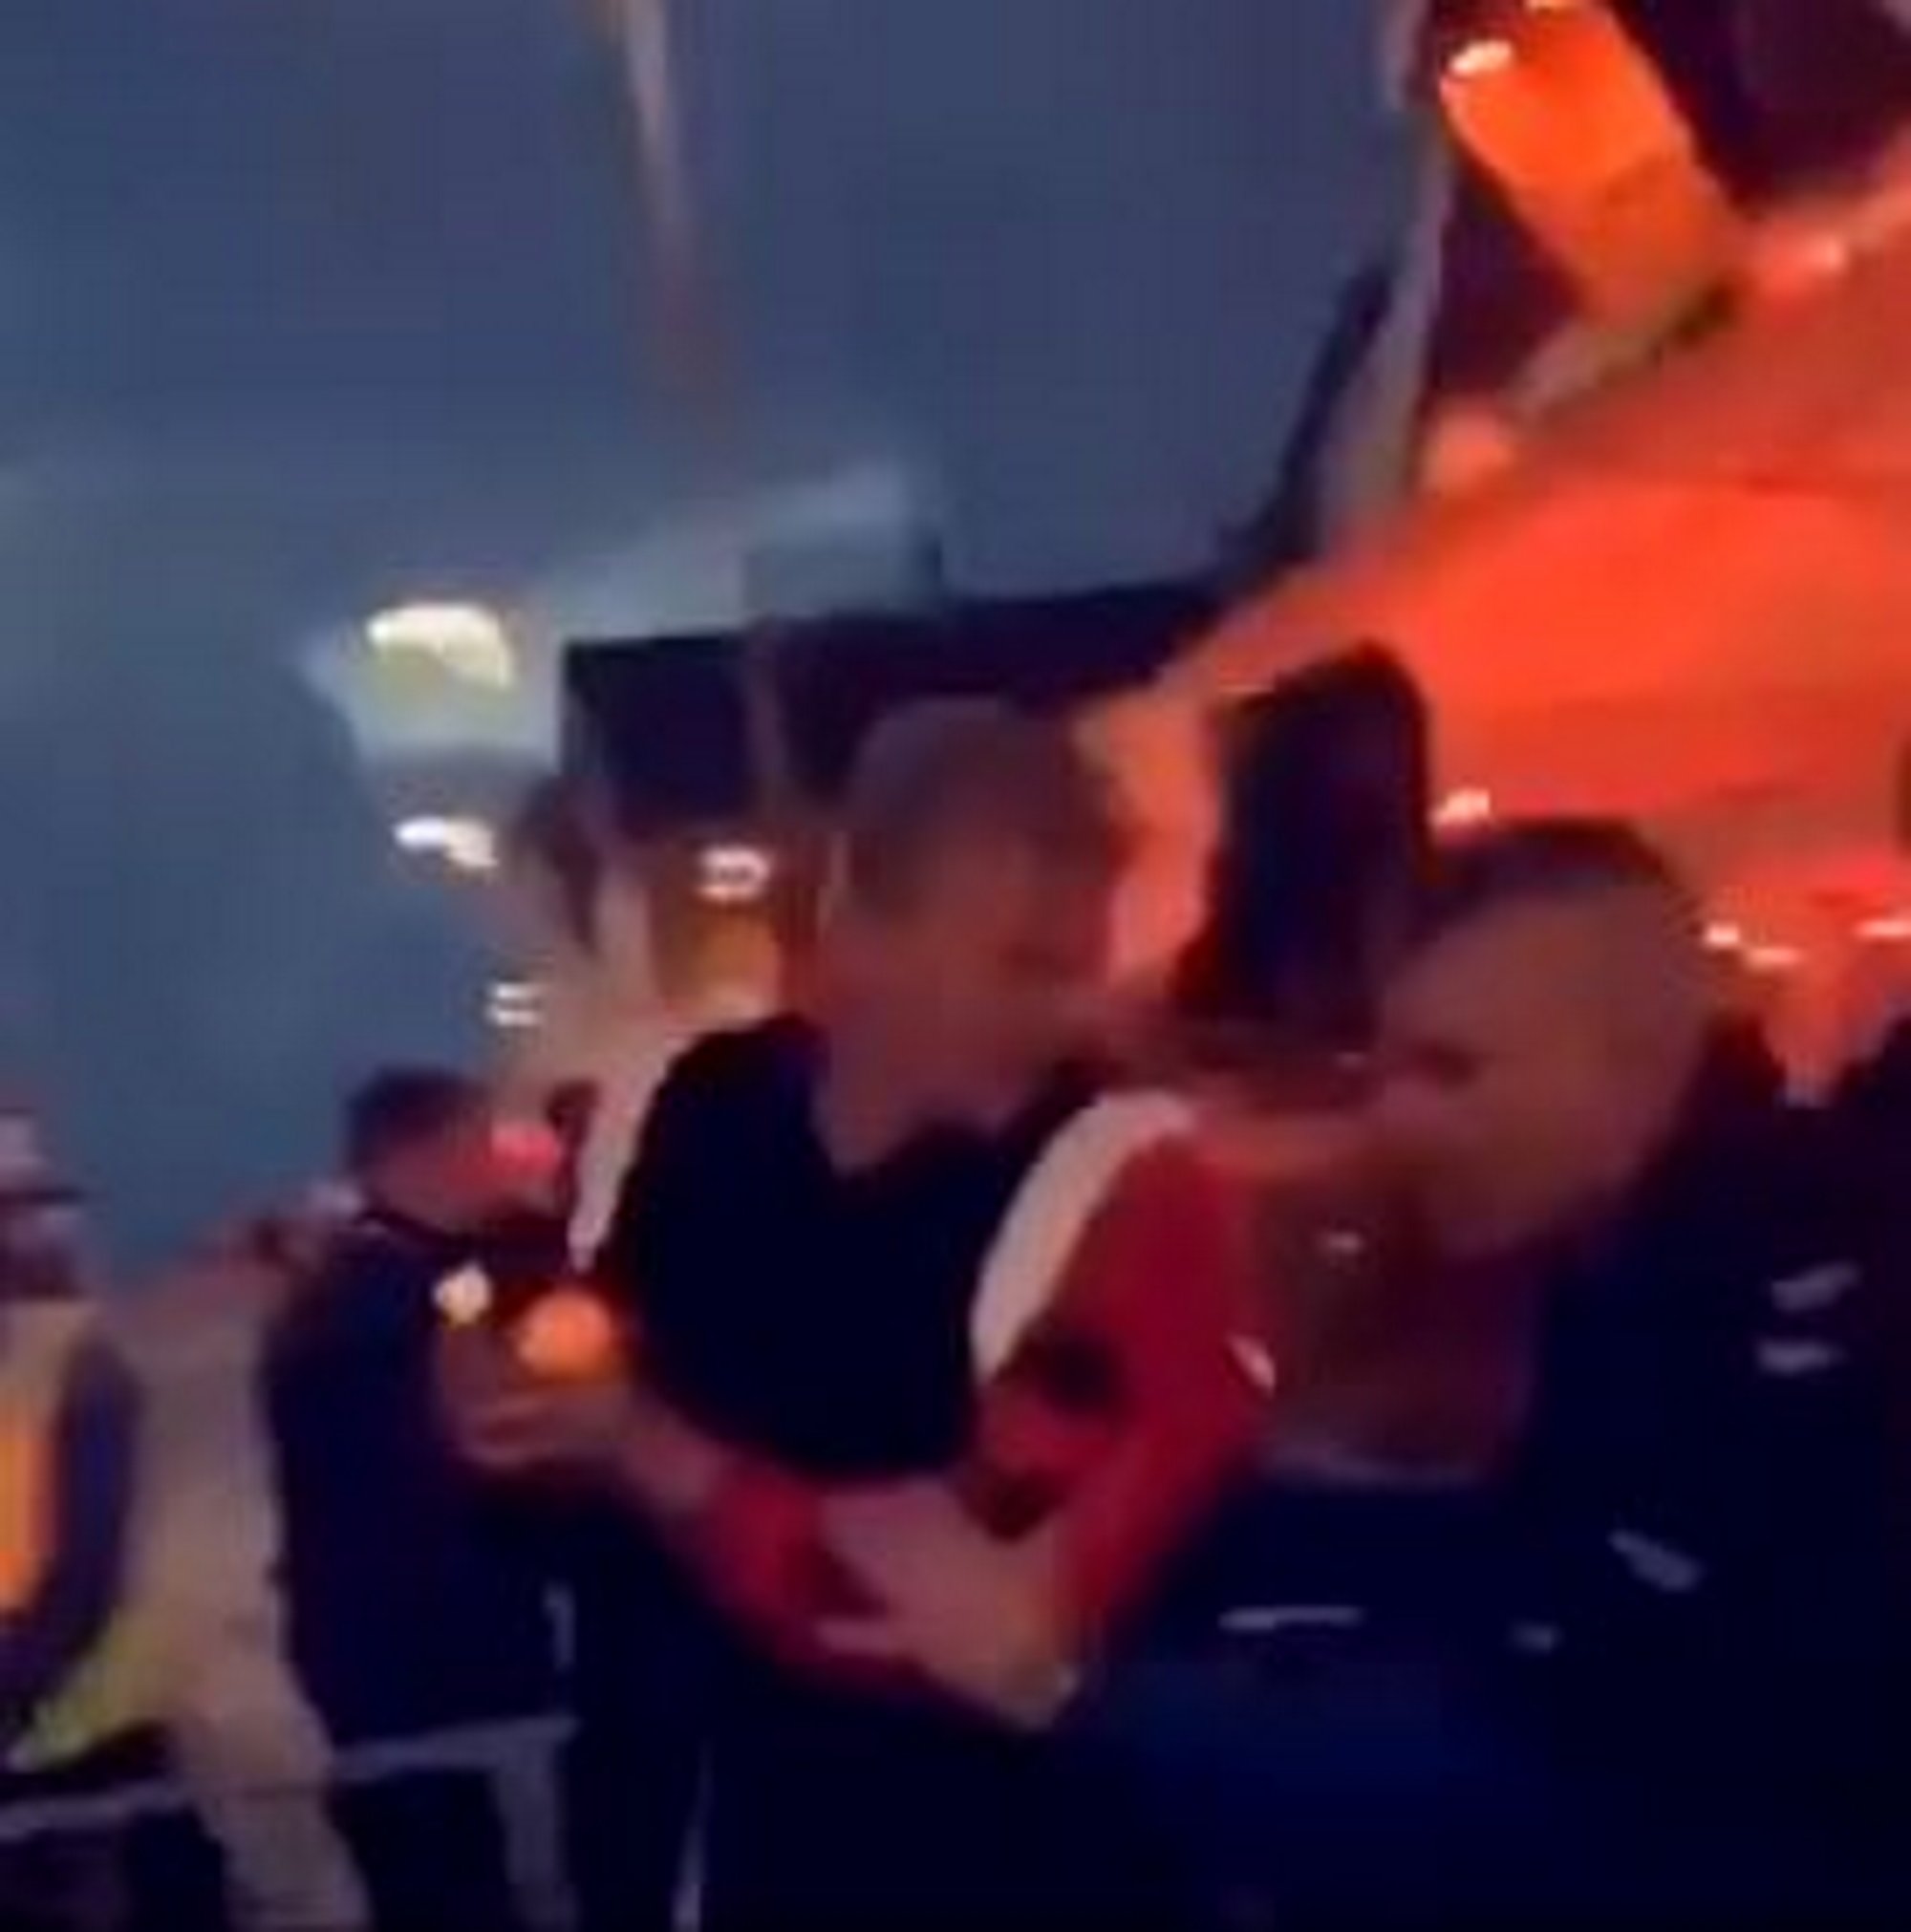 VÍDEO: Haaland, estrella del Dortmund, expulsat a empentes d'una discoteca